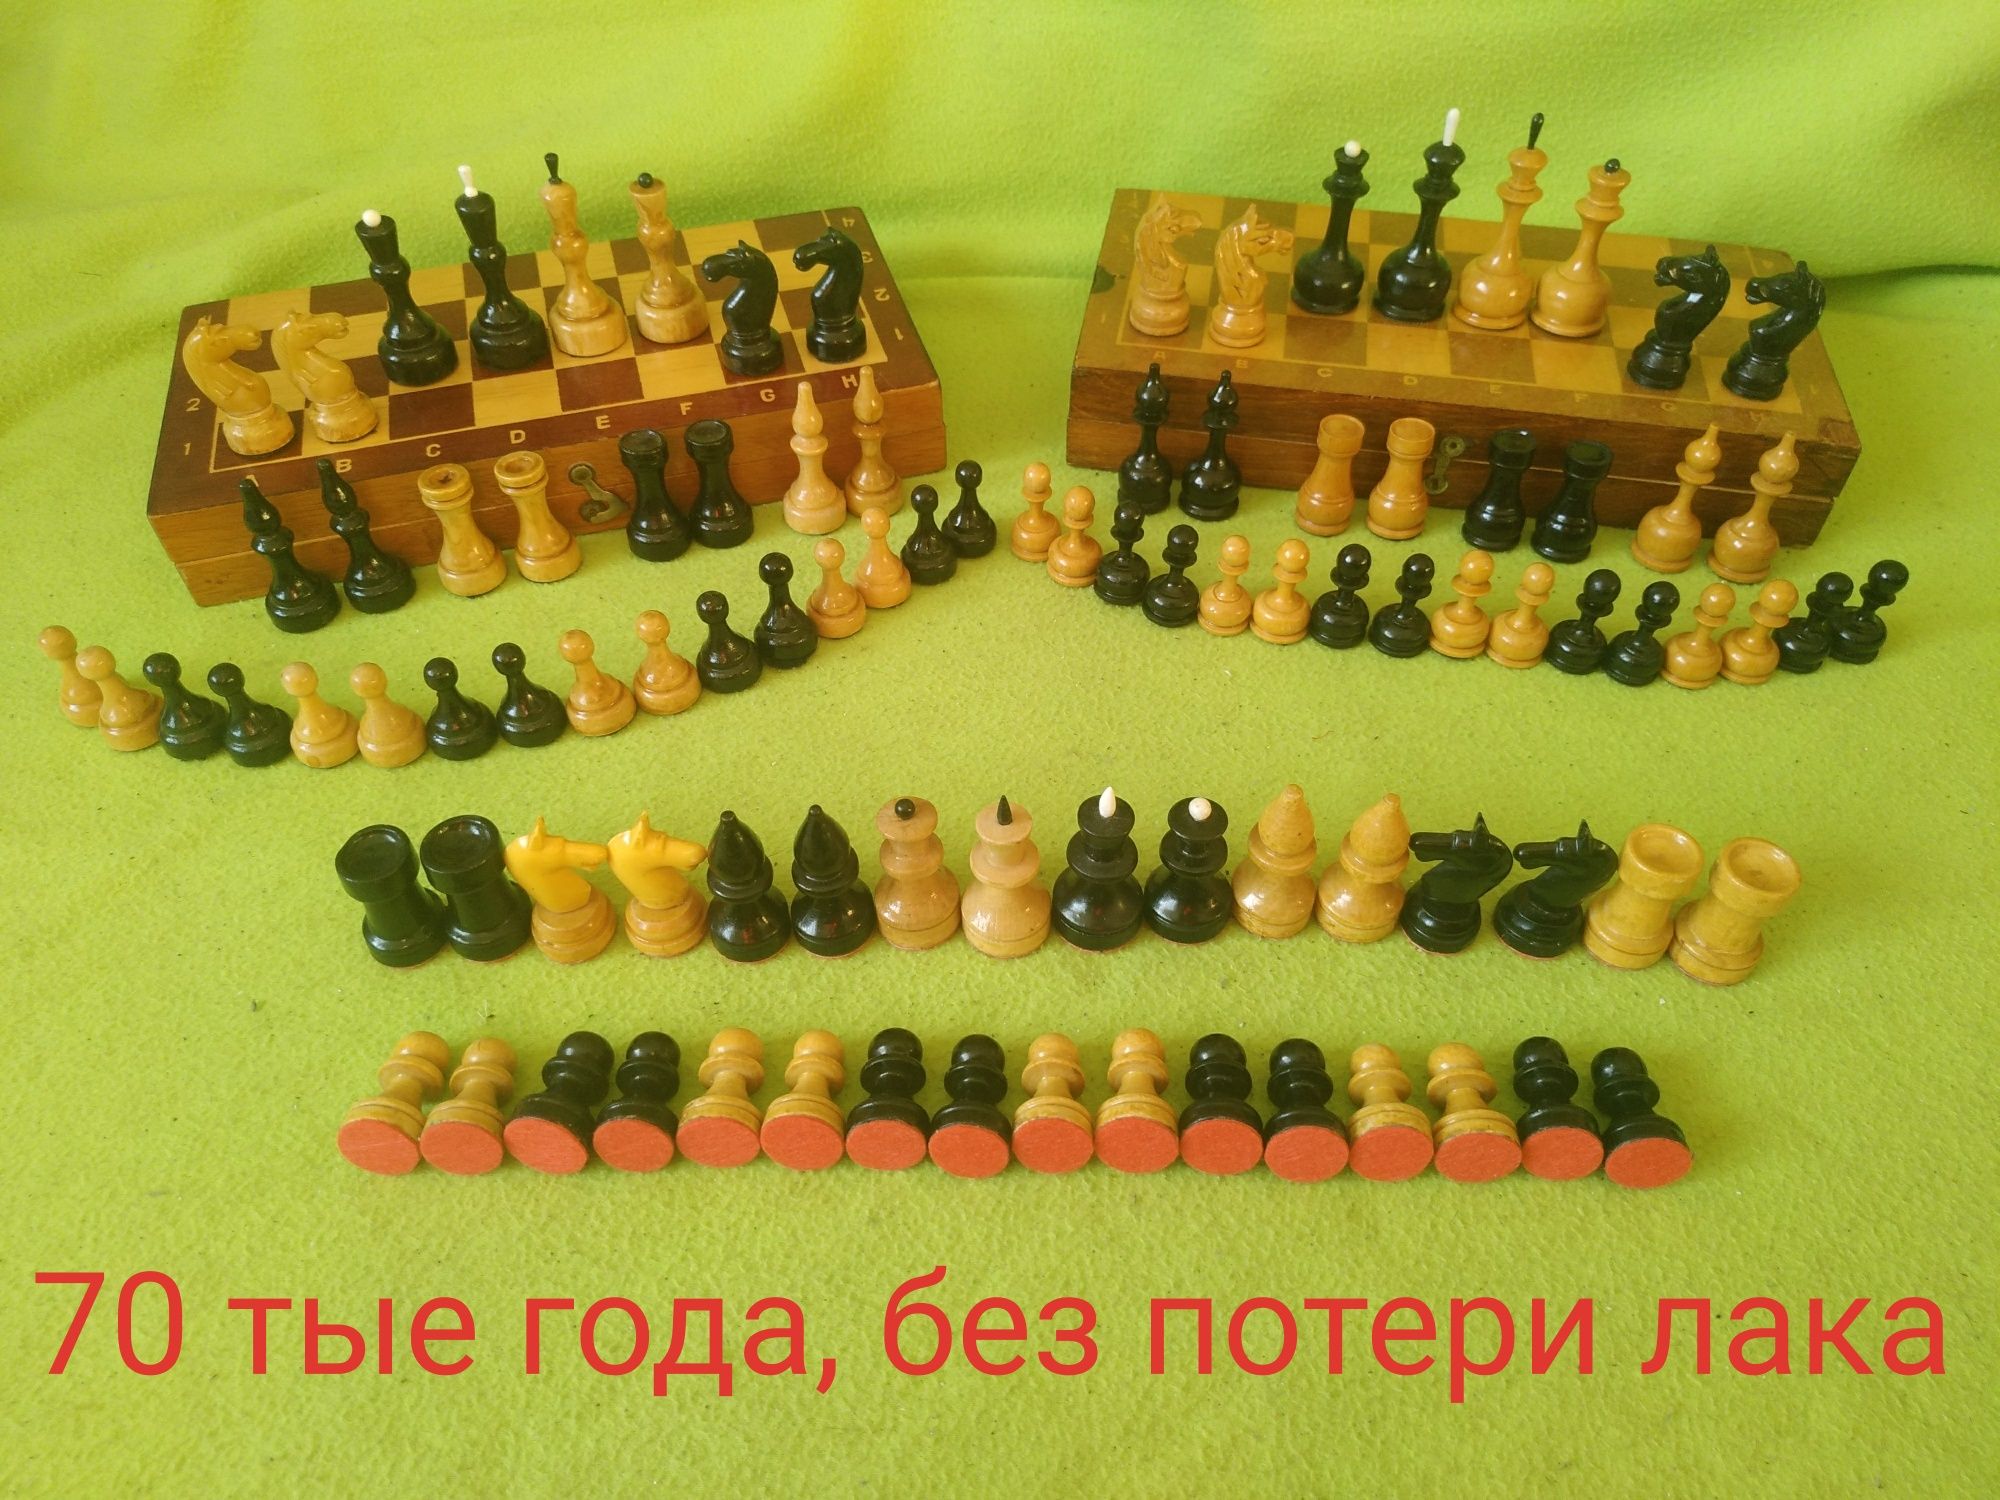 Шахматы ЭЛЕГАНТНЫЕ, из дерева - 1972 г и др